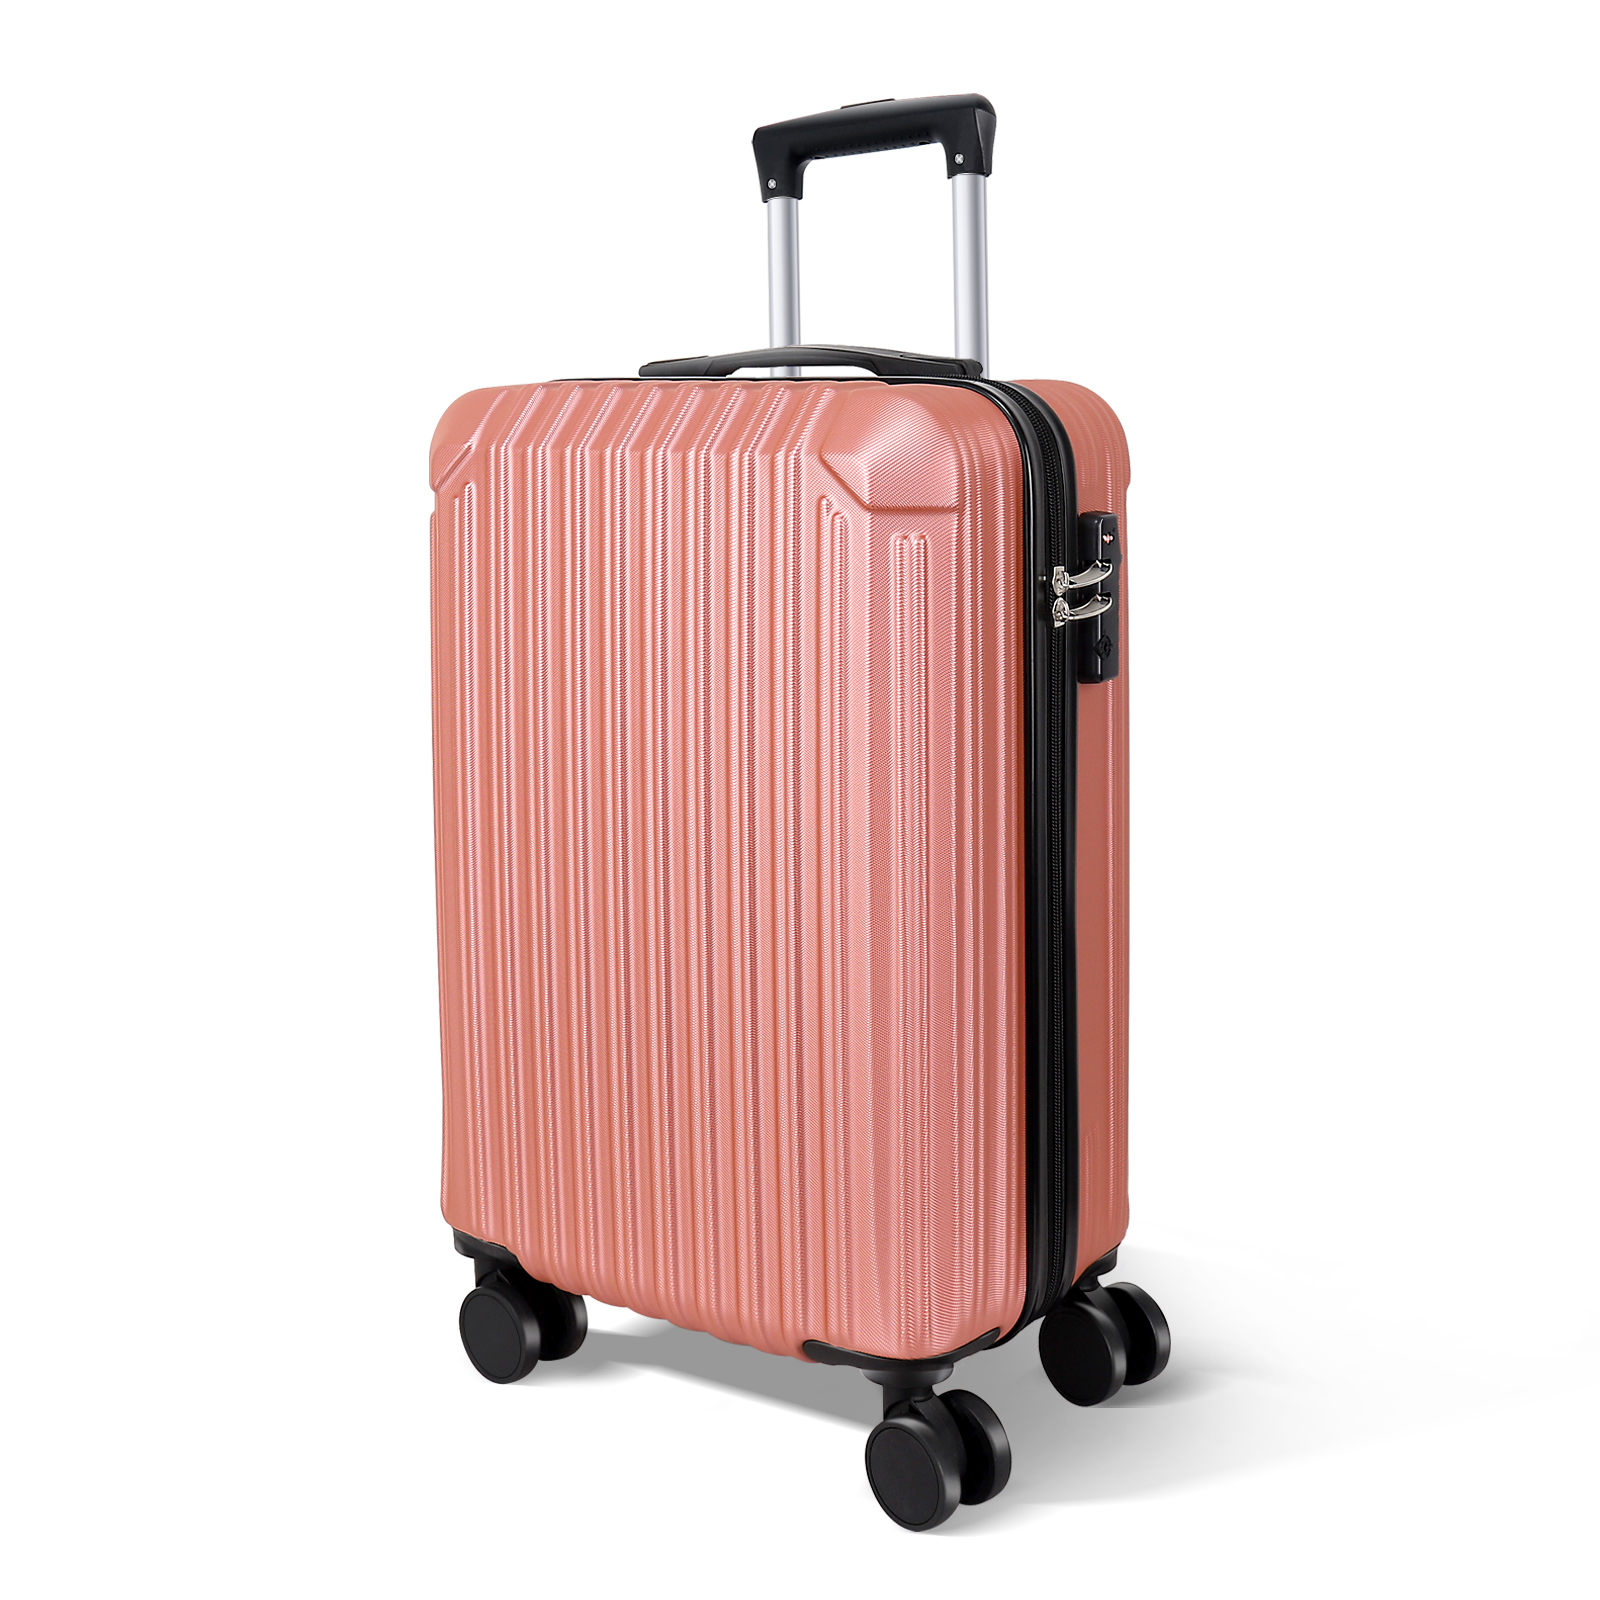 大容量 スーツケース 本体 激安 高品質 ピンクゴールド Lサイズ 、XL